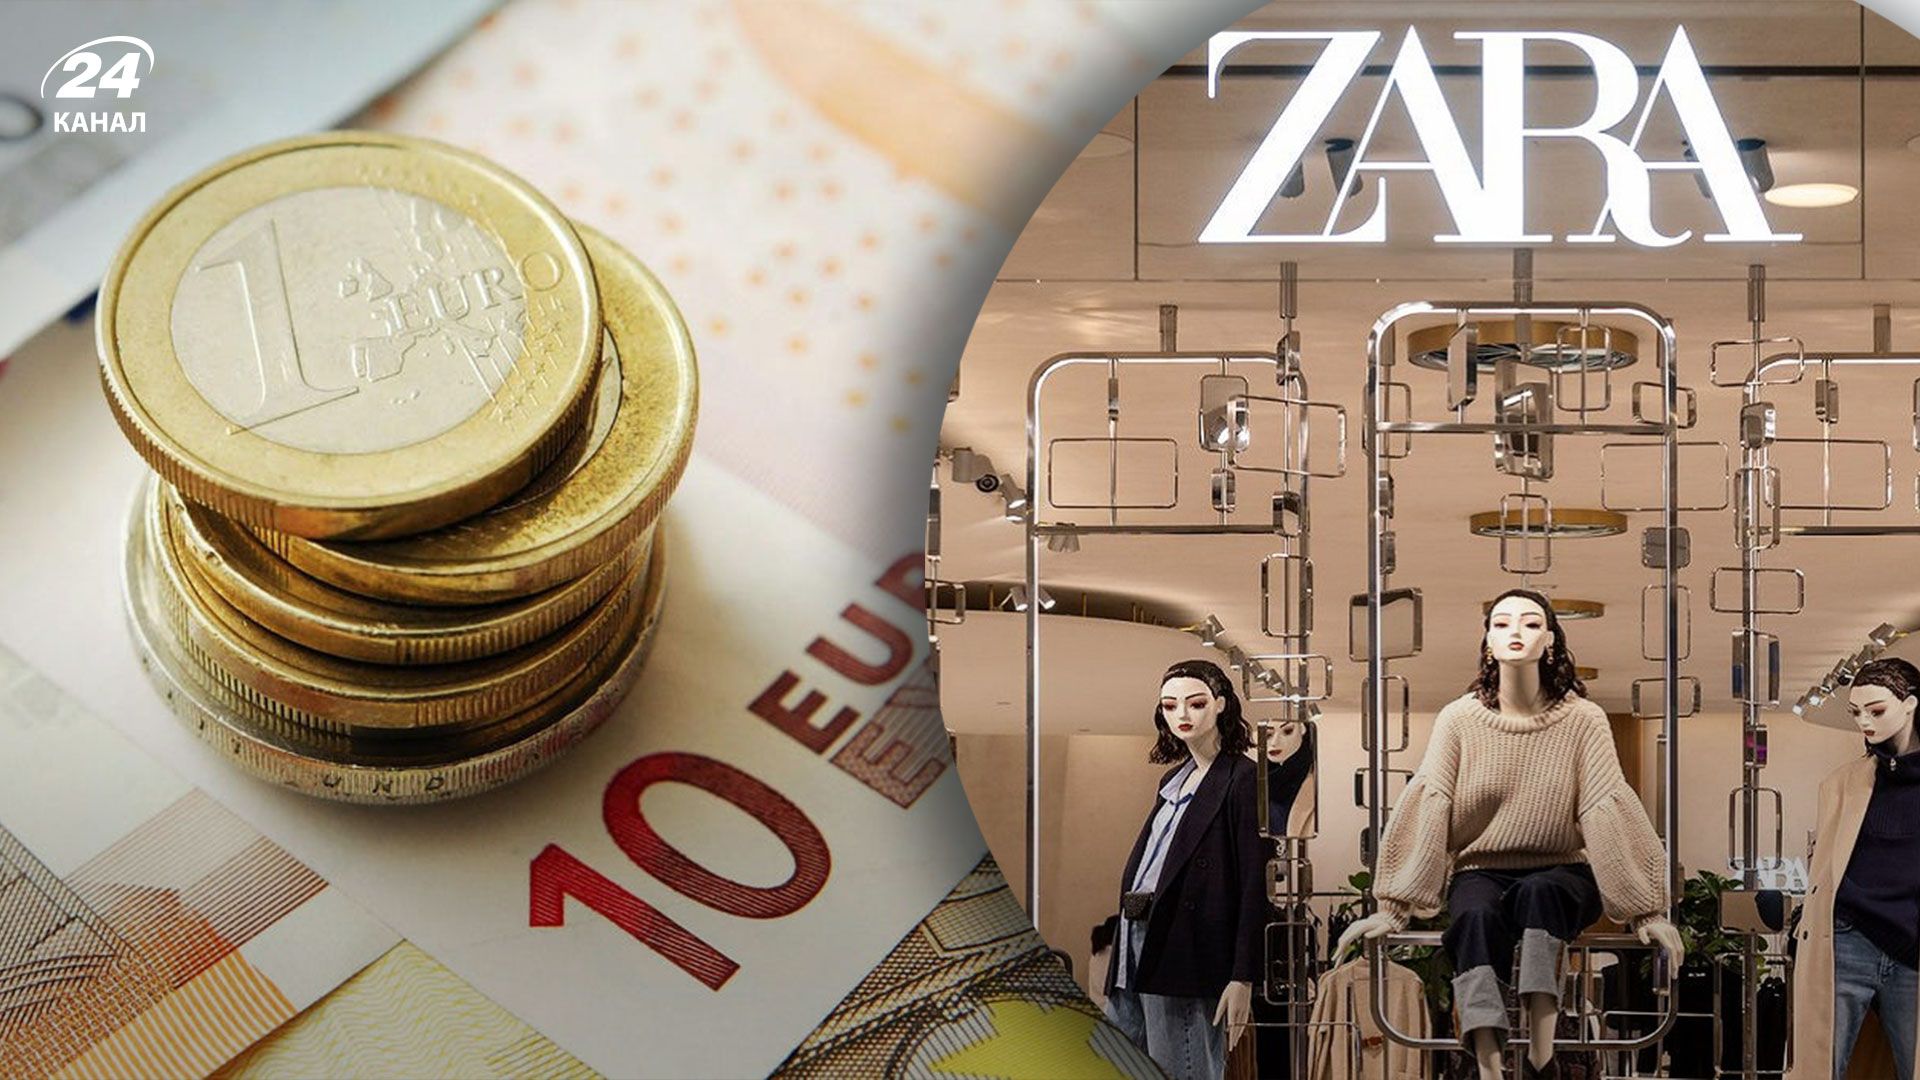 Працівникам іспанських магазинів Zara вирішили підвищити зарплати на 25% після того, як вони оголосили страйки